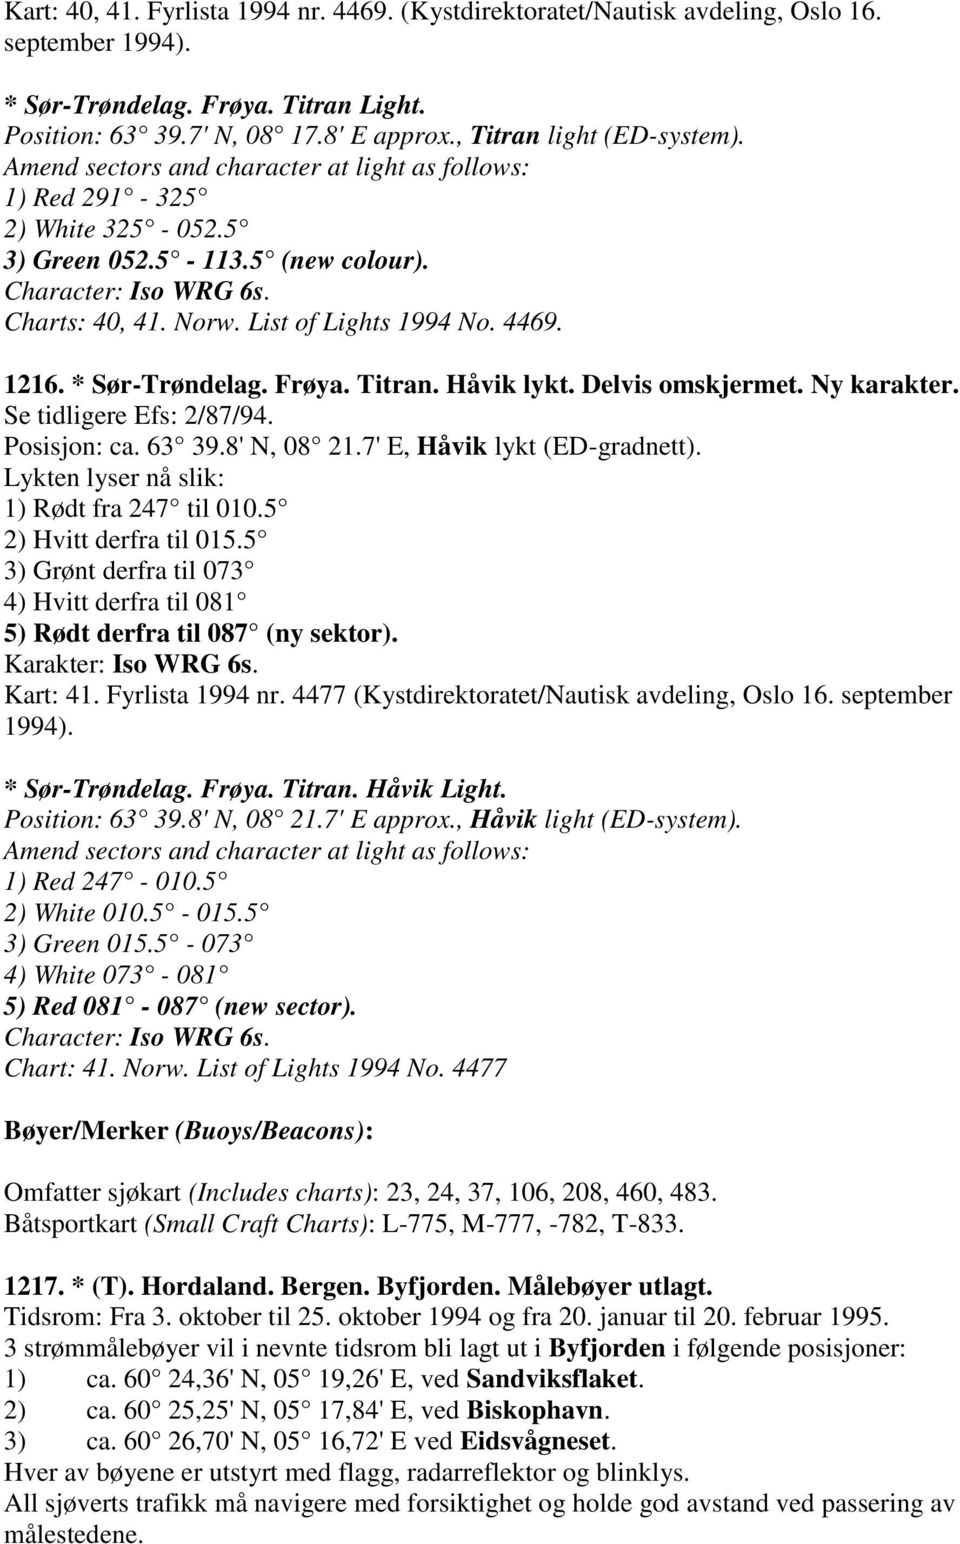 List of Lights 1994 No. 4469. 1216. * Sør-Trøndelag. Frøya. Titran. Håvik lykt. Delvis omskjermet. Ny karakter. Posisjon: ca. 63 39.8' N, 08 21.7' E, Håvik lykt (ED-gradnett). 1) Rødt fra 247 til 010.